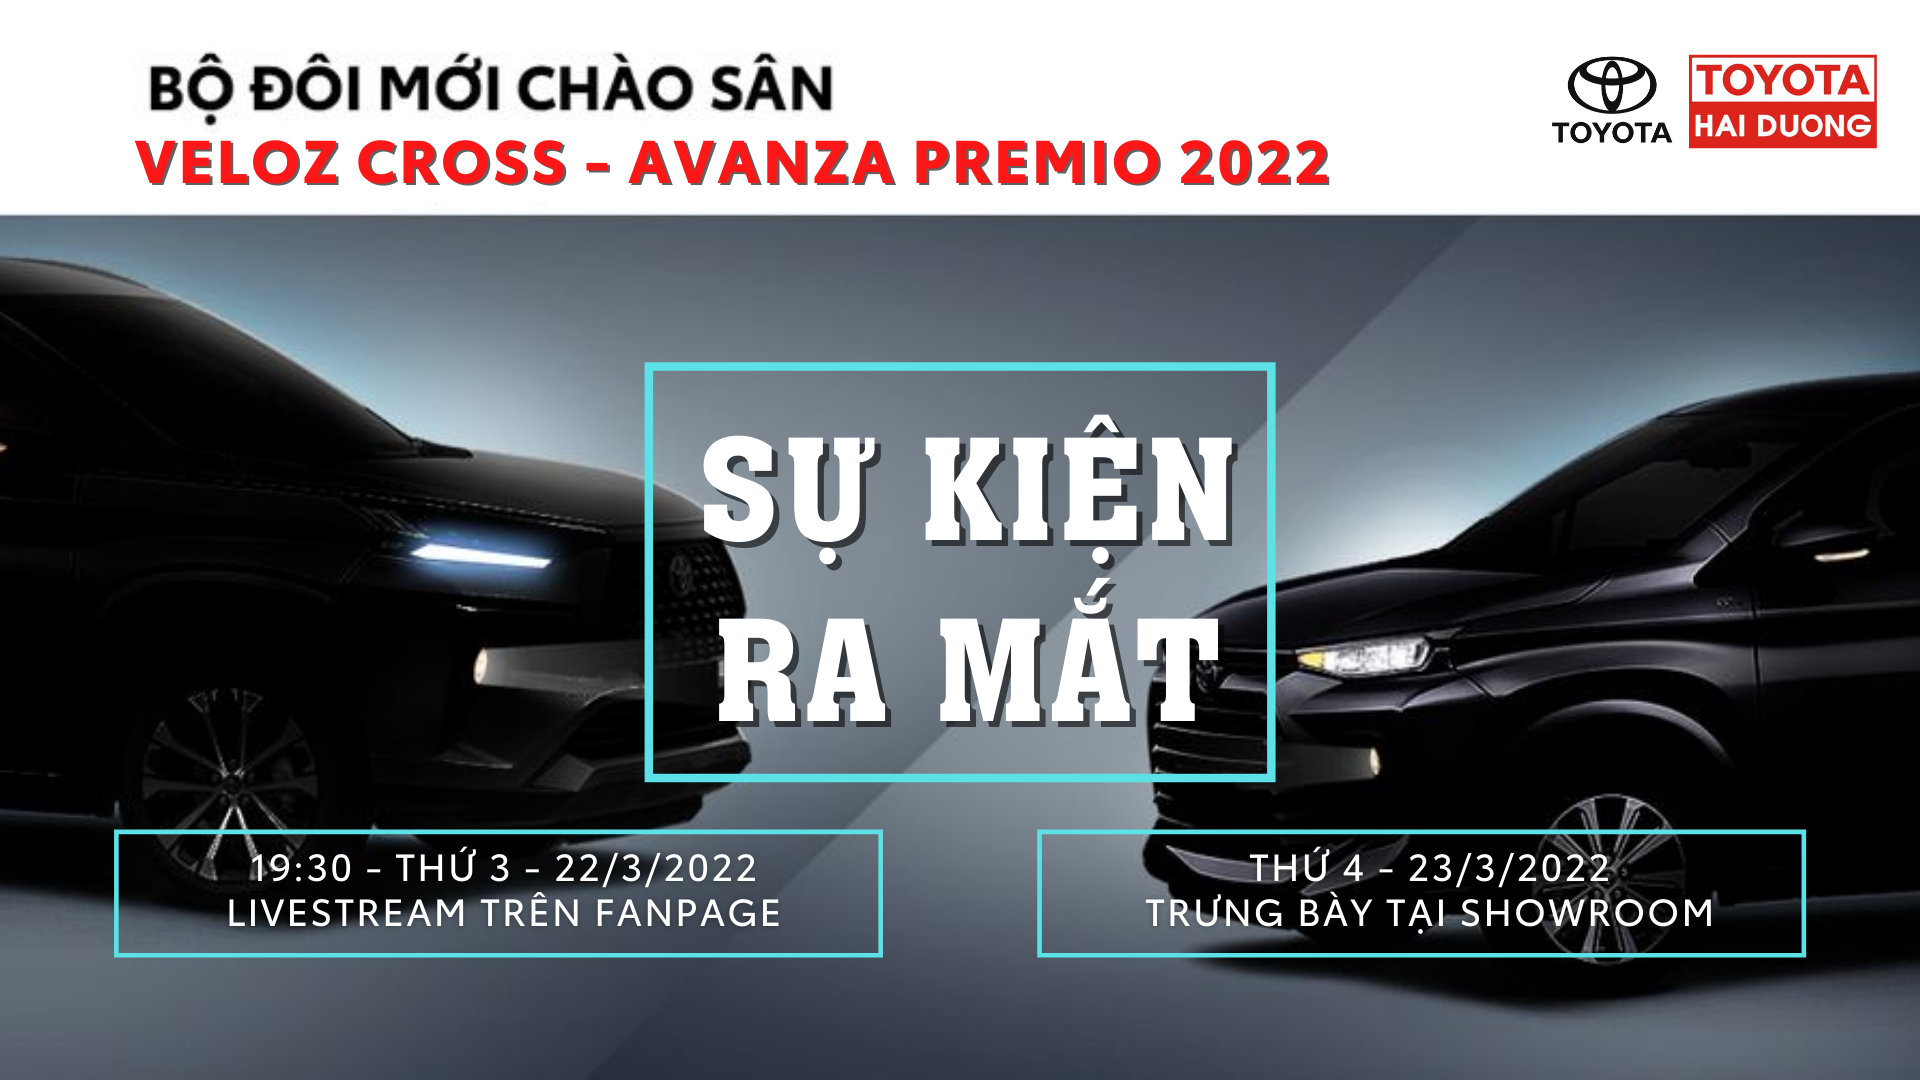 [SỰ KIỆN RA MẮT] Bộ đôi mới Veloz Cross và Avanza Premio 2022 chào sân